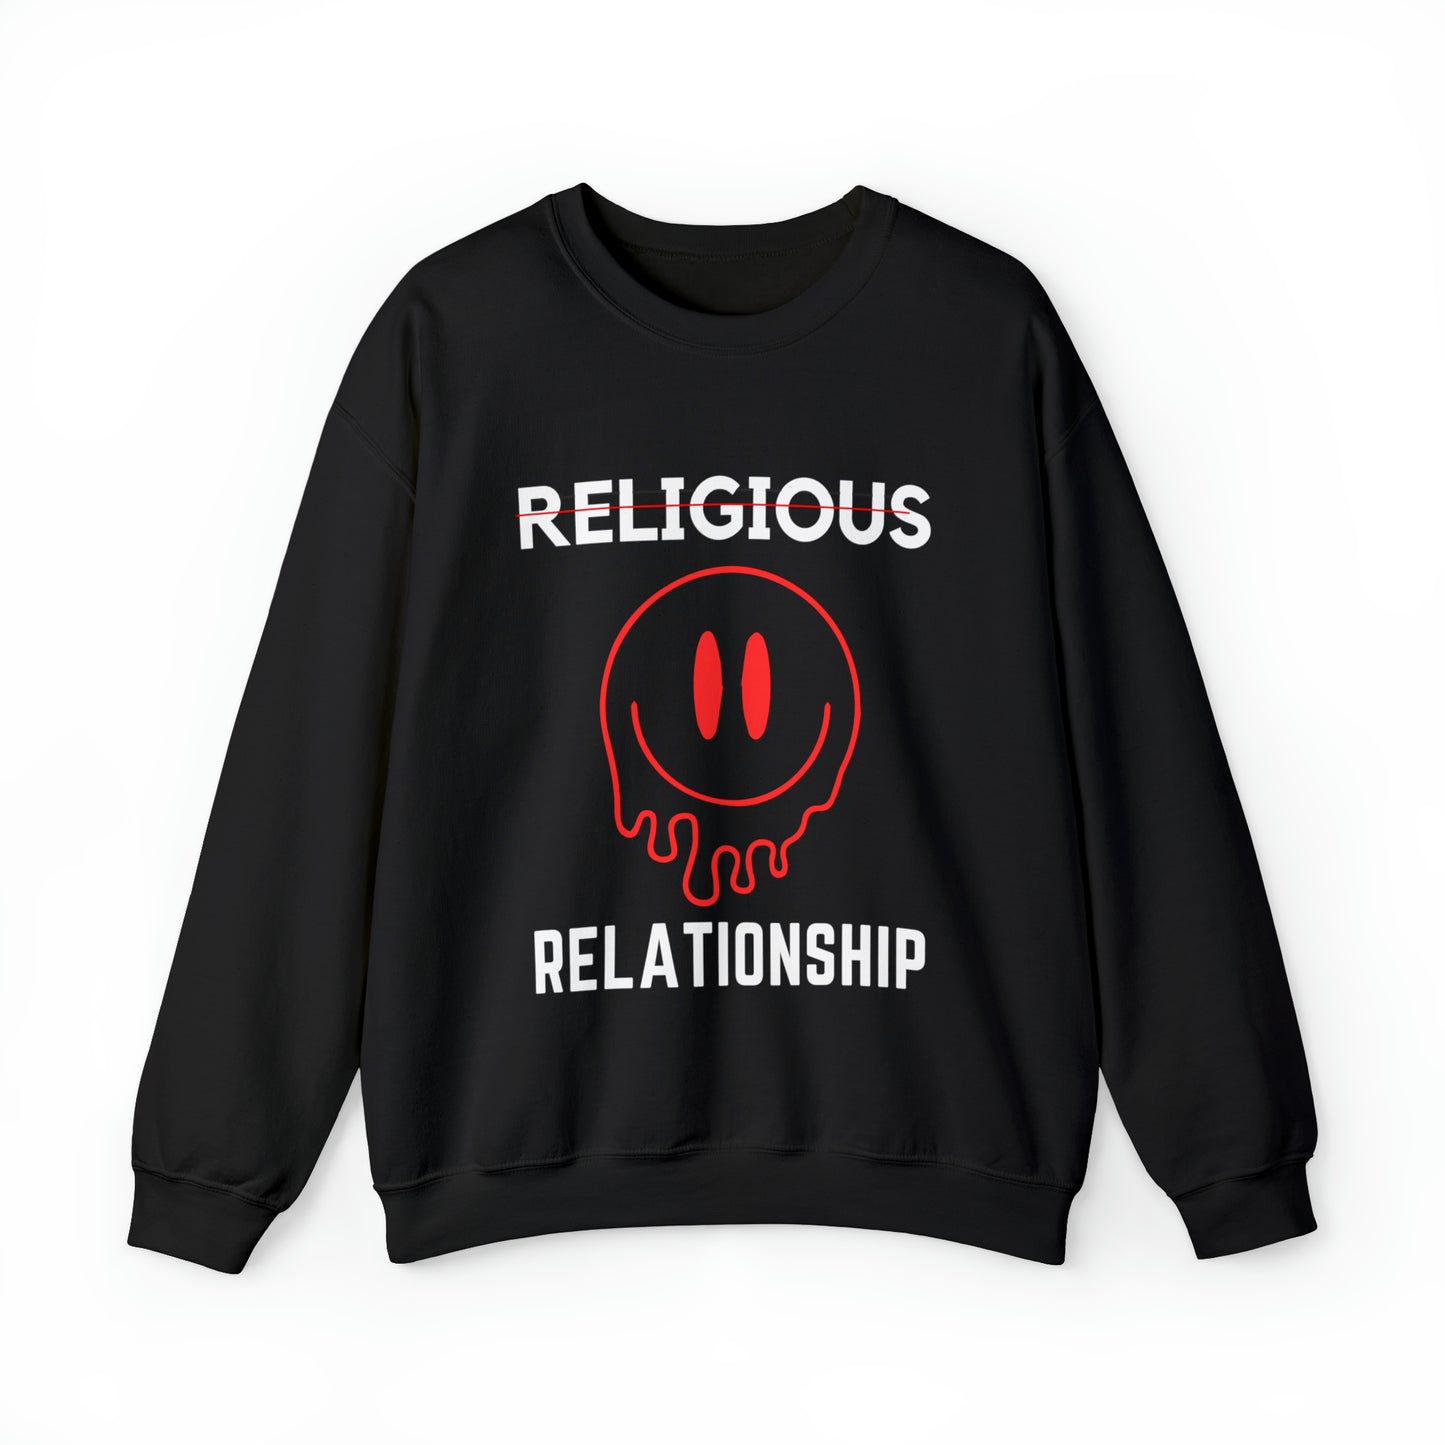 "RELATIONSHIP"  Sweatshirt